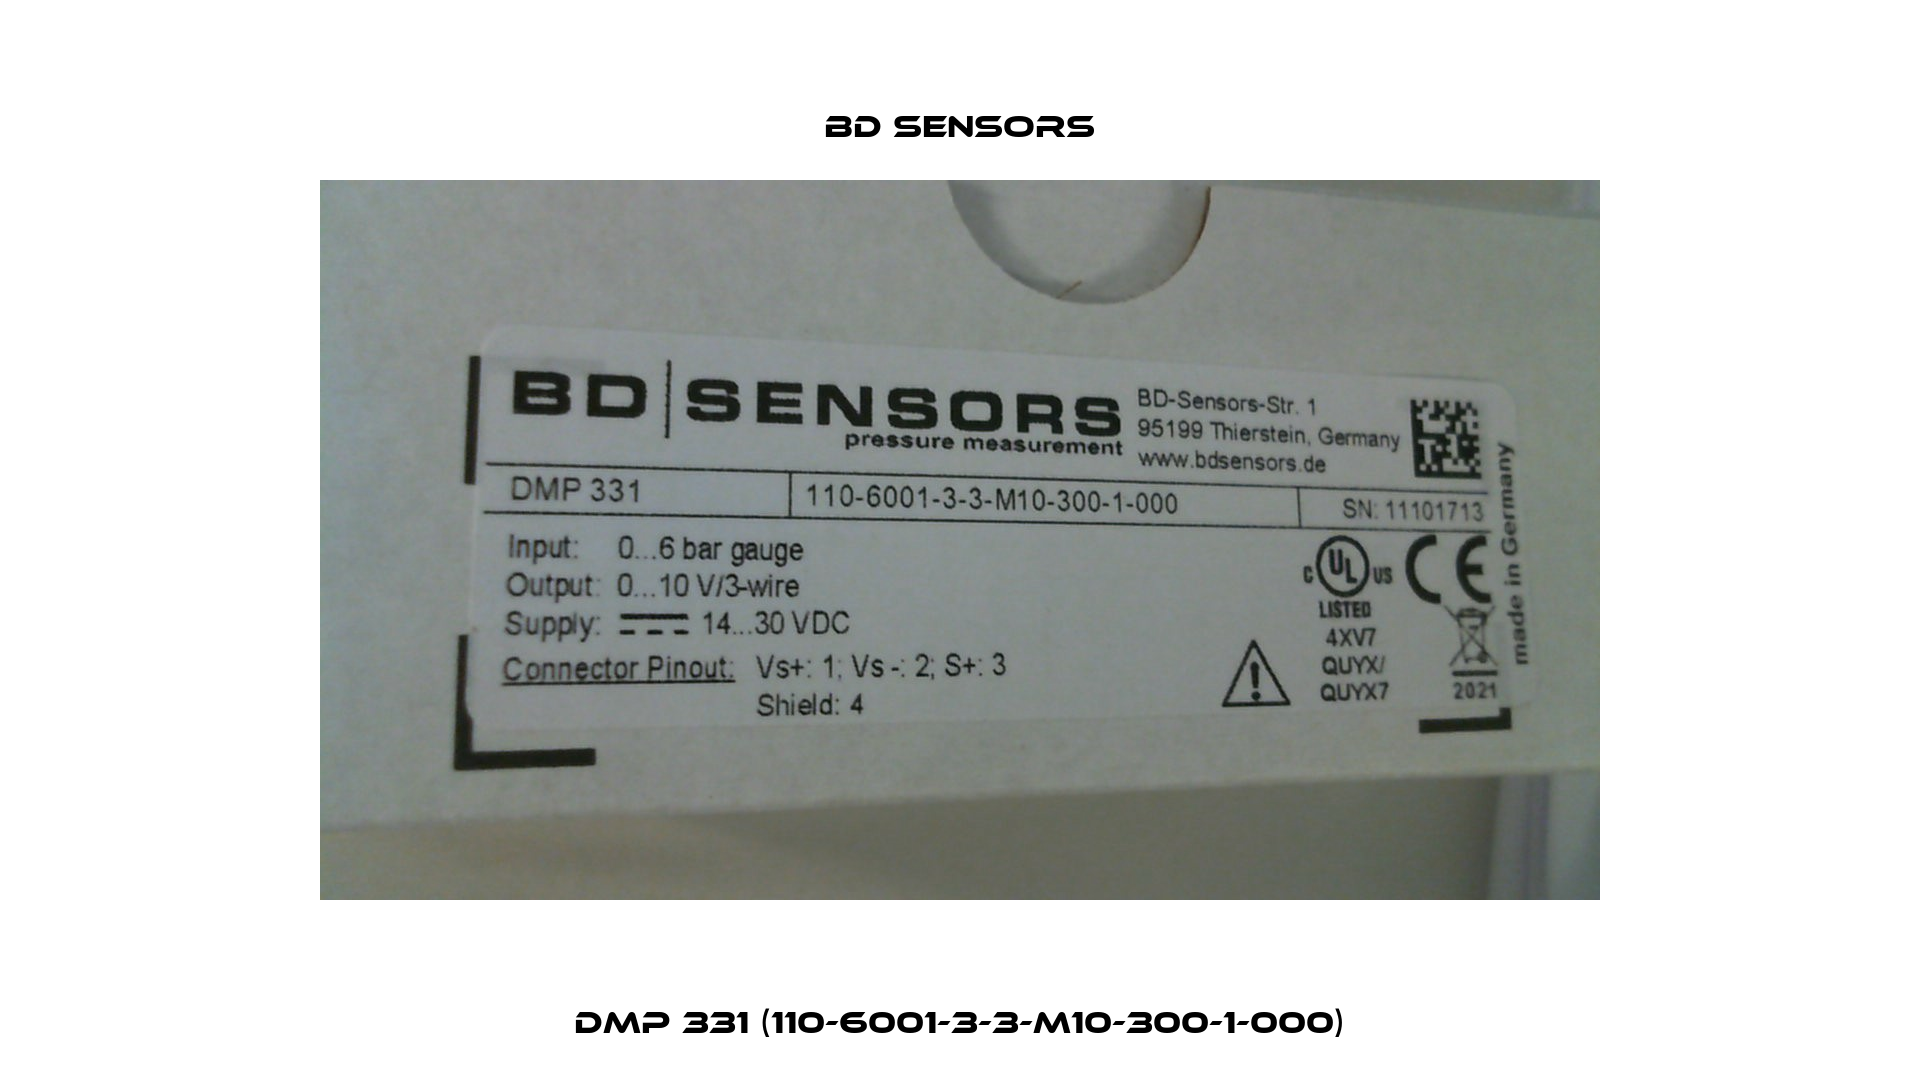 DMP 331 (110-6001-3-3-M10-300-1-000) Bd Sensors